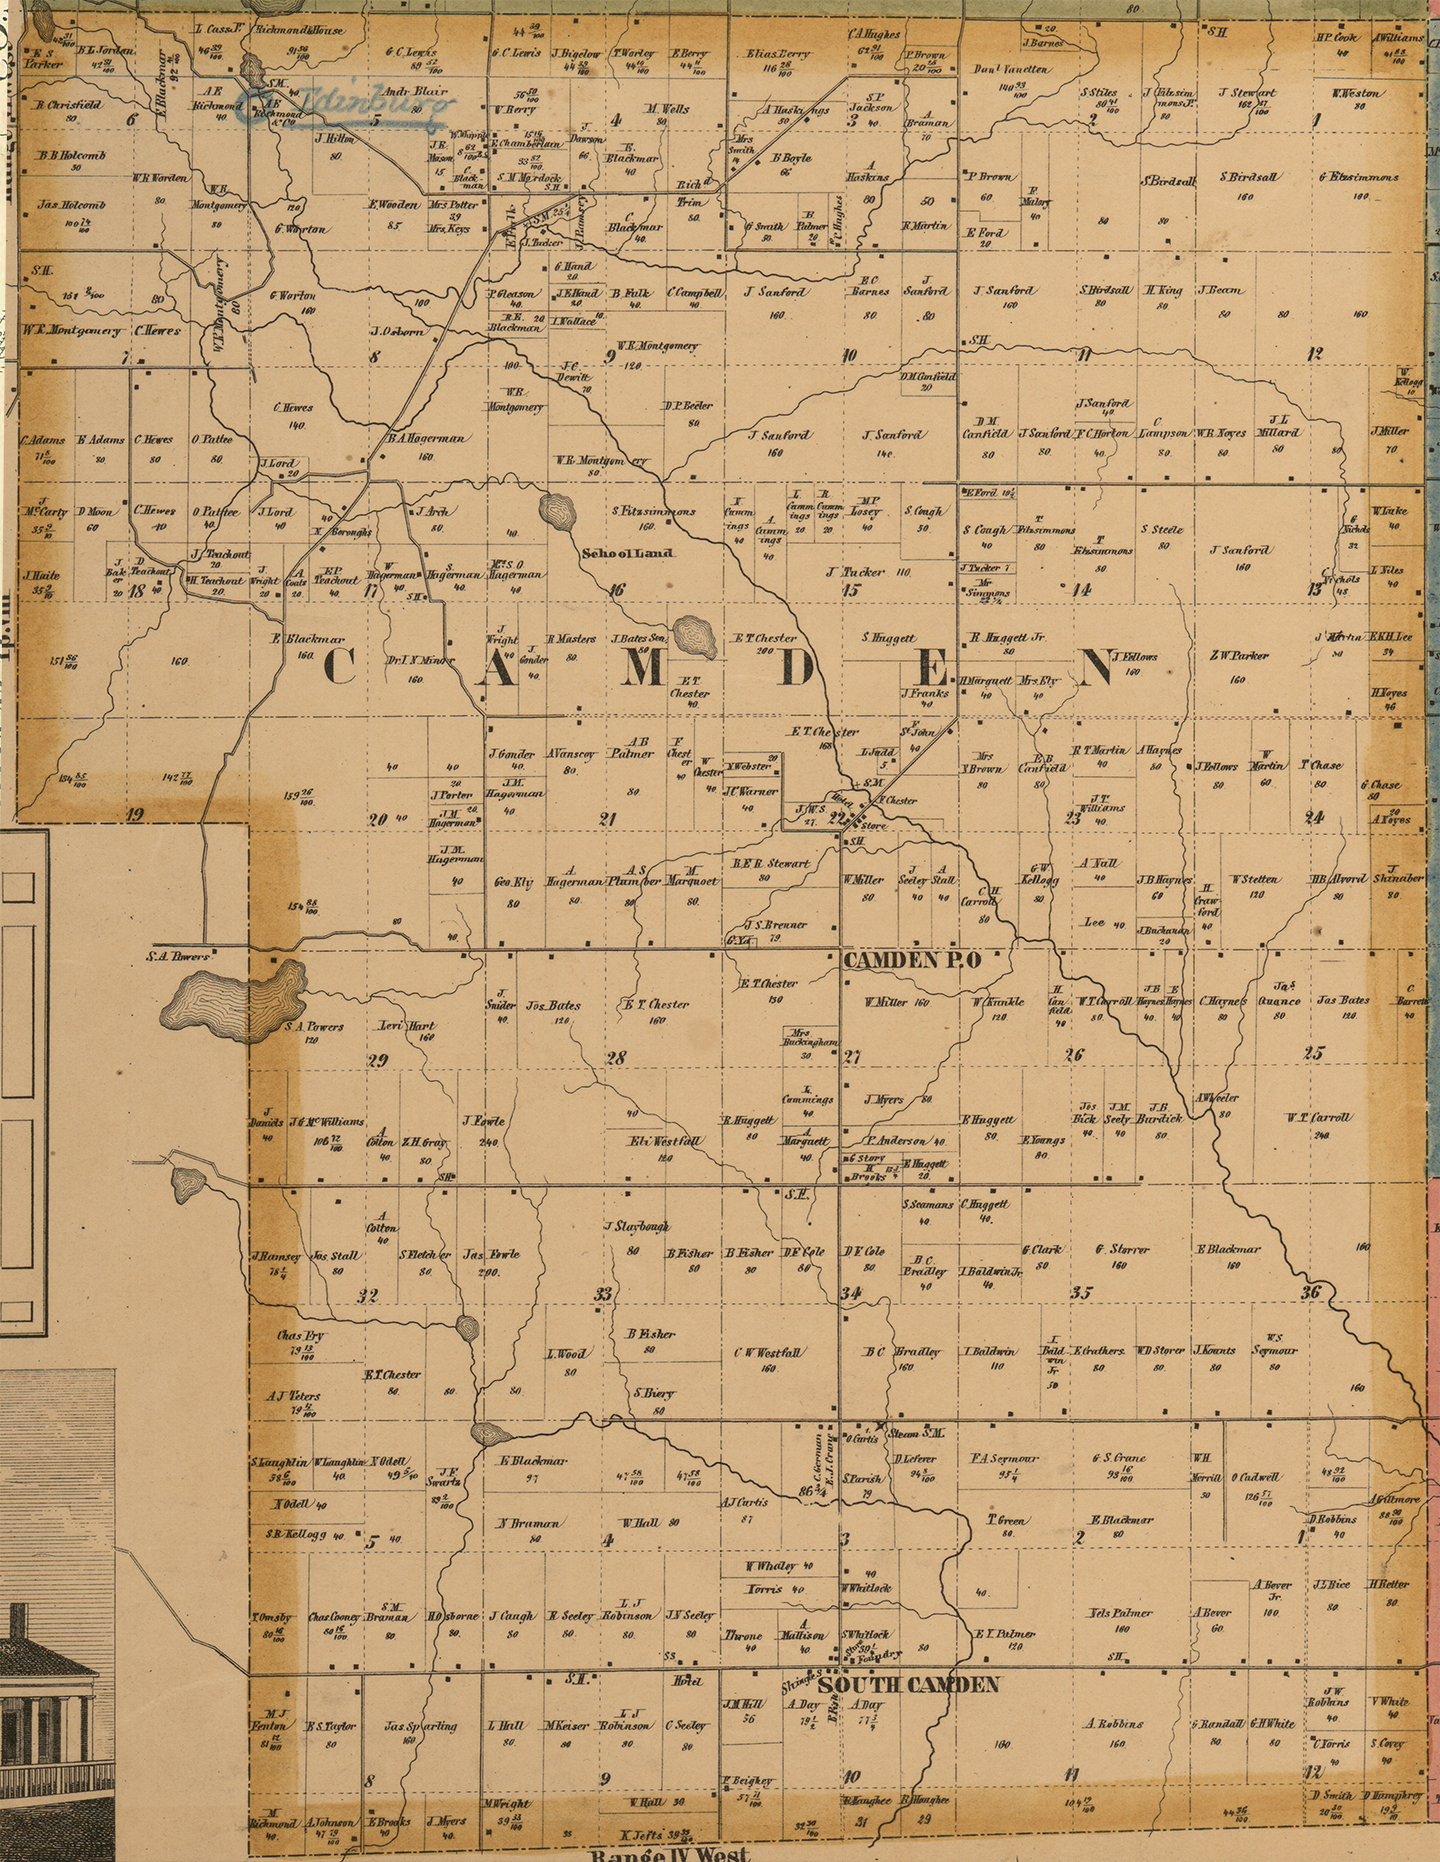 1857 Camden Township, Michigan landownership map